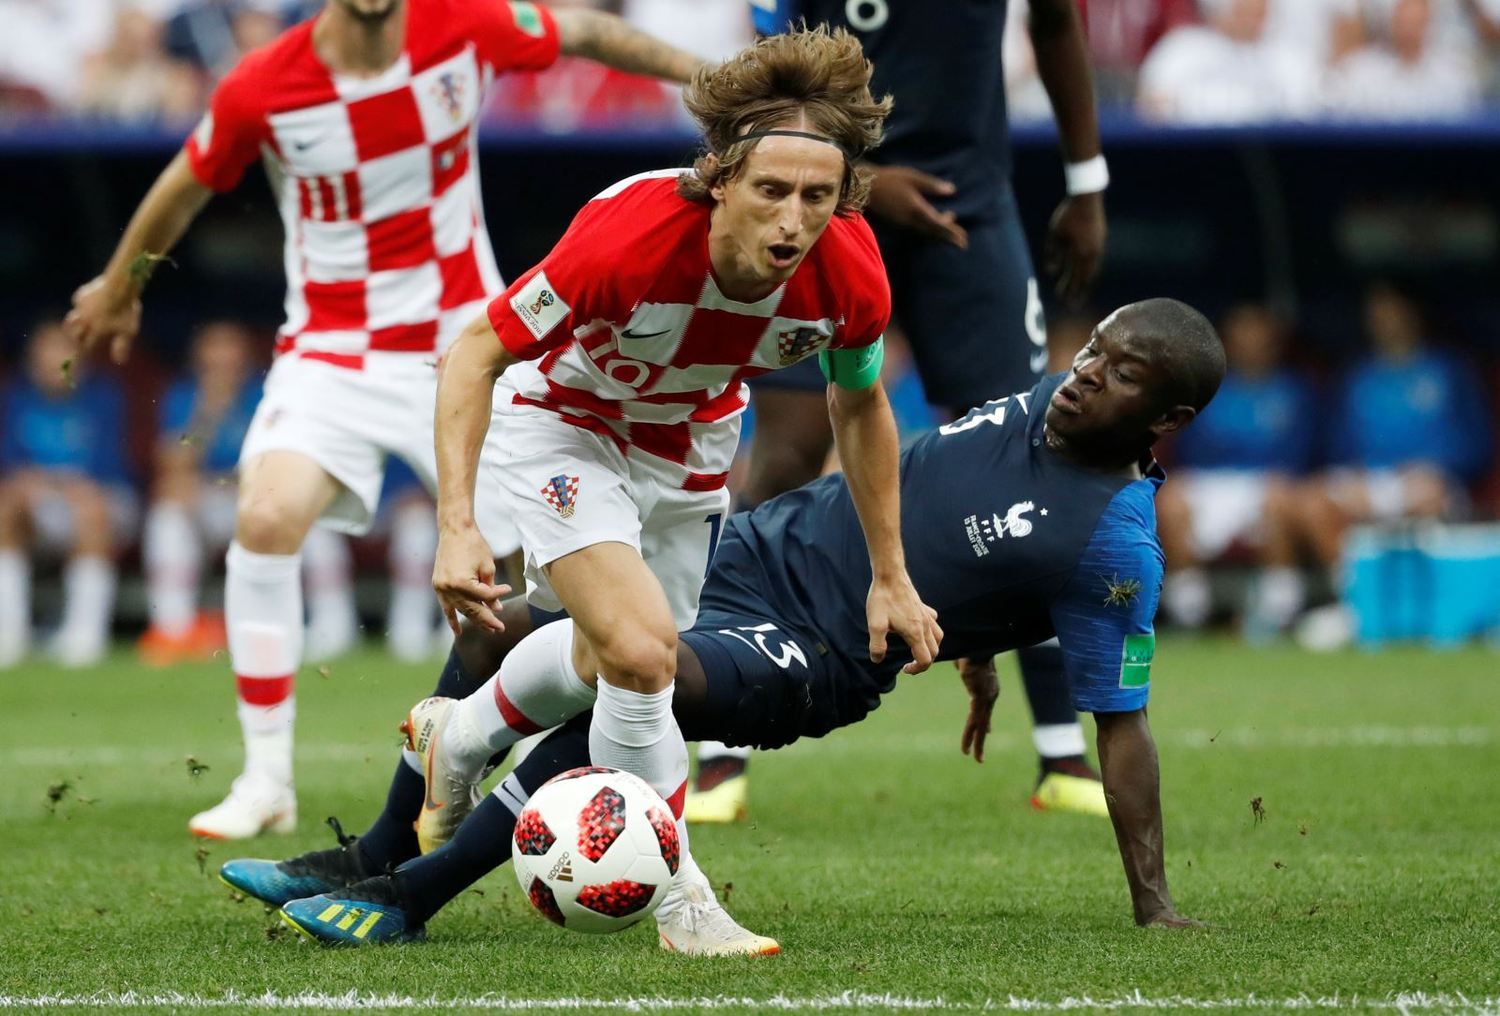 França goleia Croácia na final e é bicampeã da Copa, copa do mundo